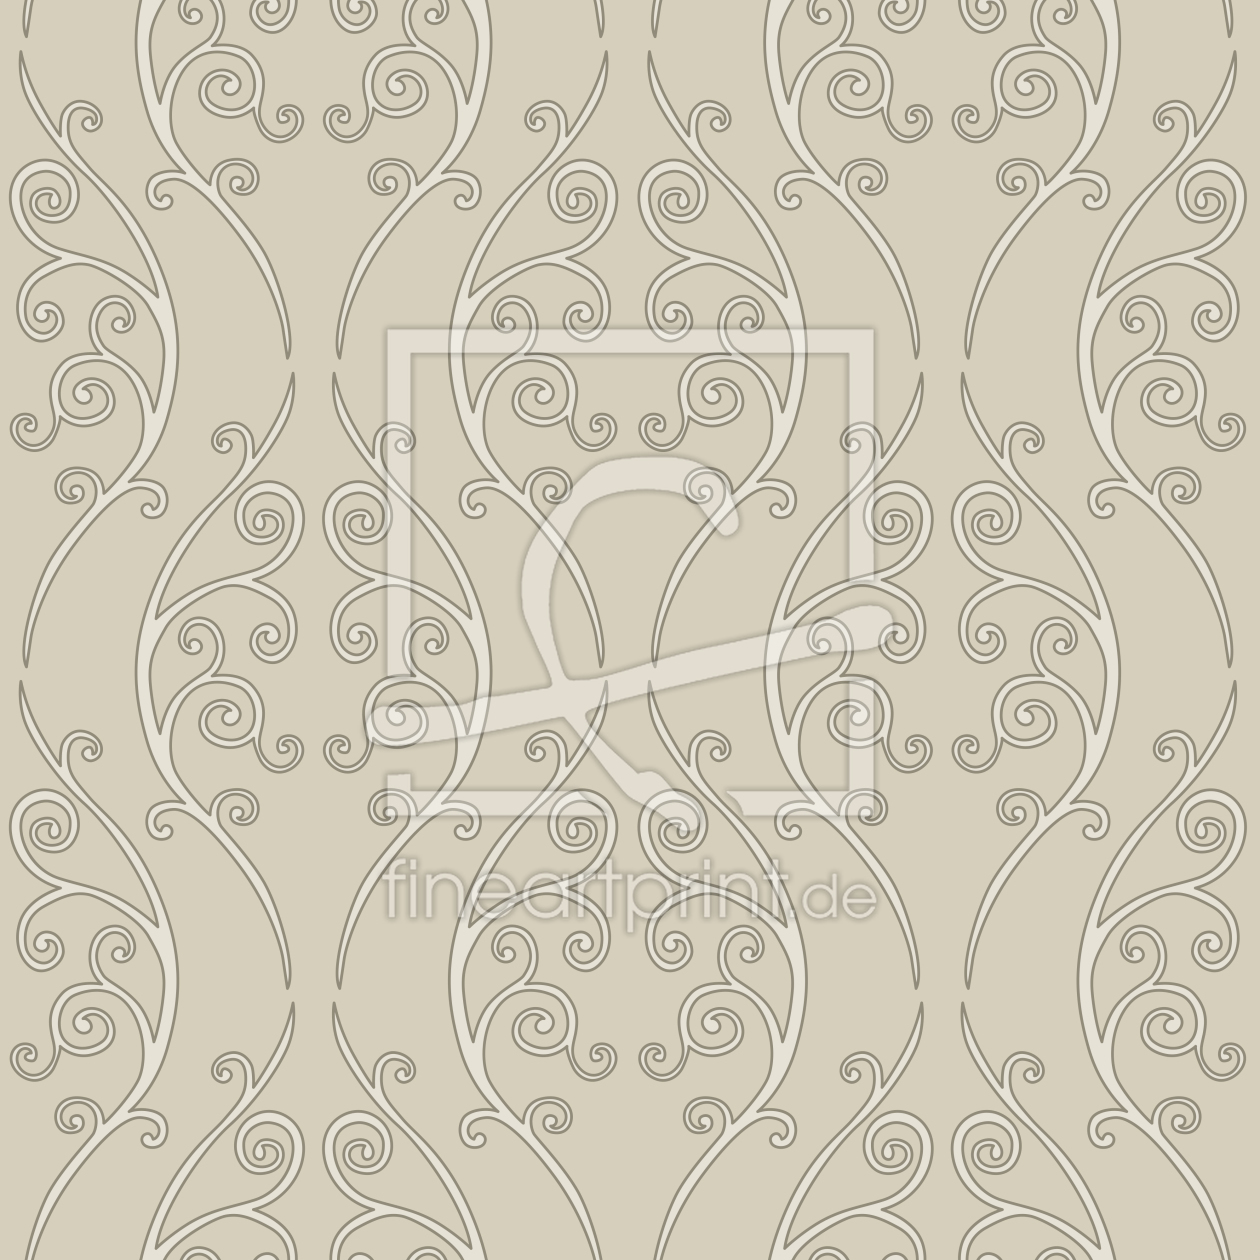 Bild-Nr.: 9025143 Beigefarbener Zaungast erstellt von patterndesigns-com